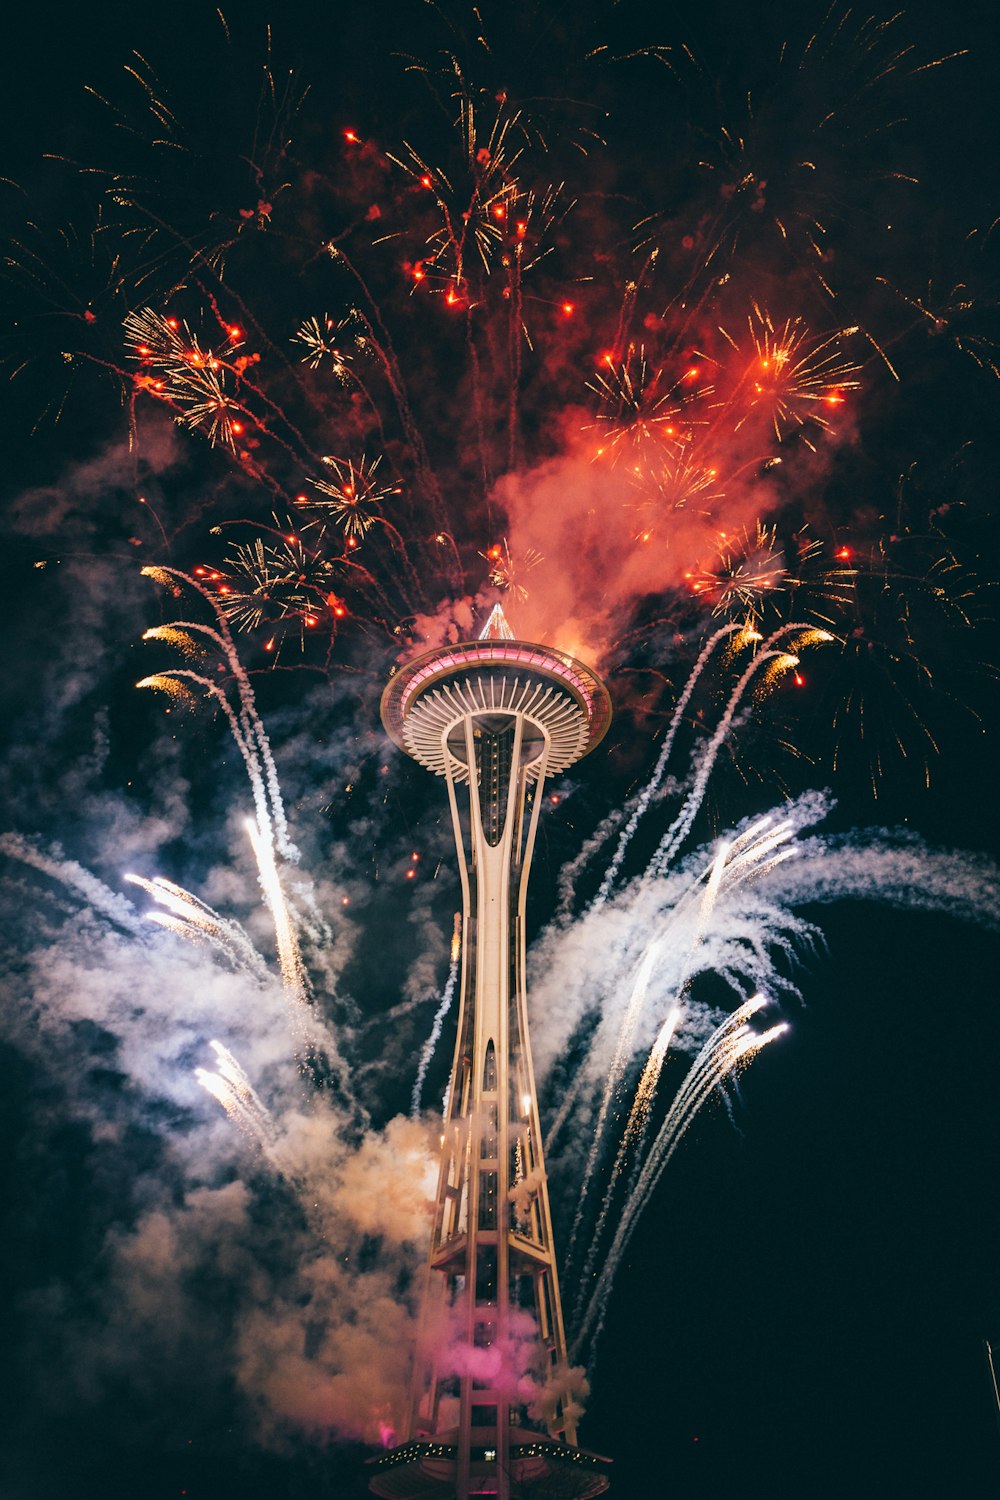 Space Needle, Seattle circondata da fuochi d'artificio